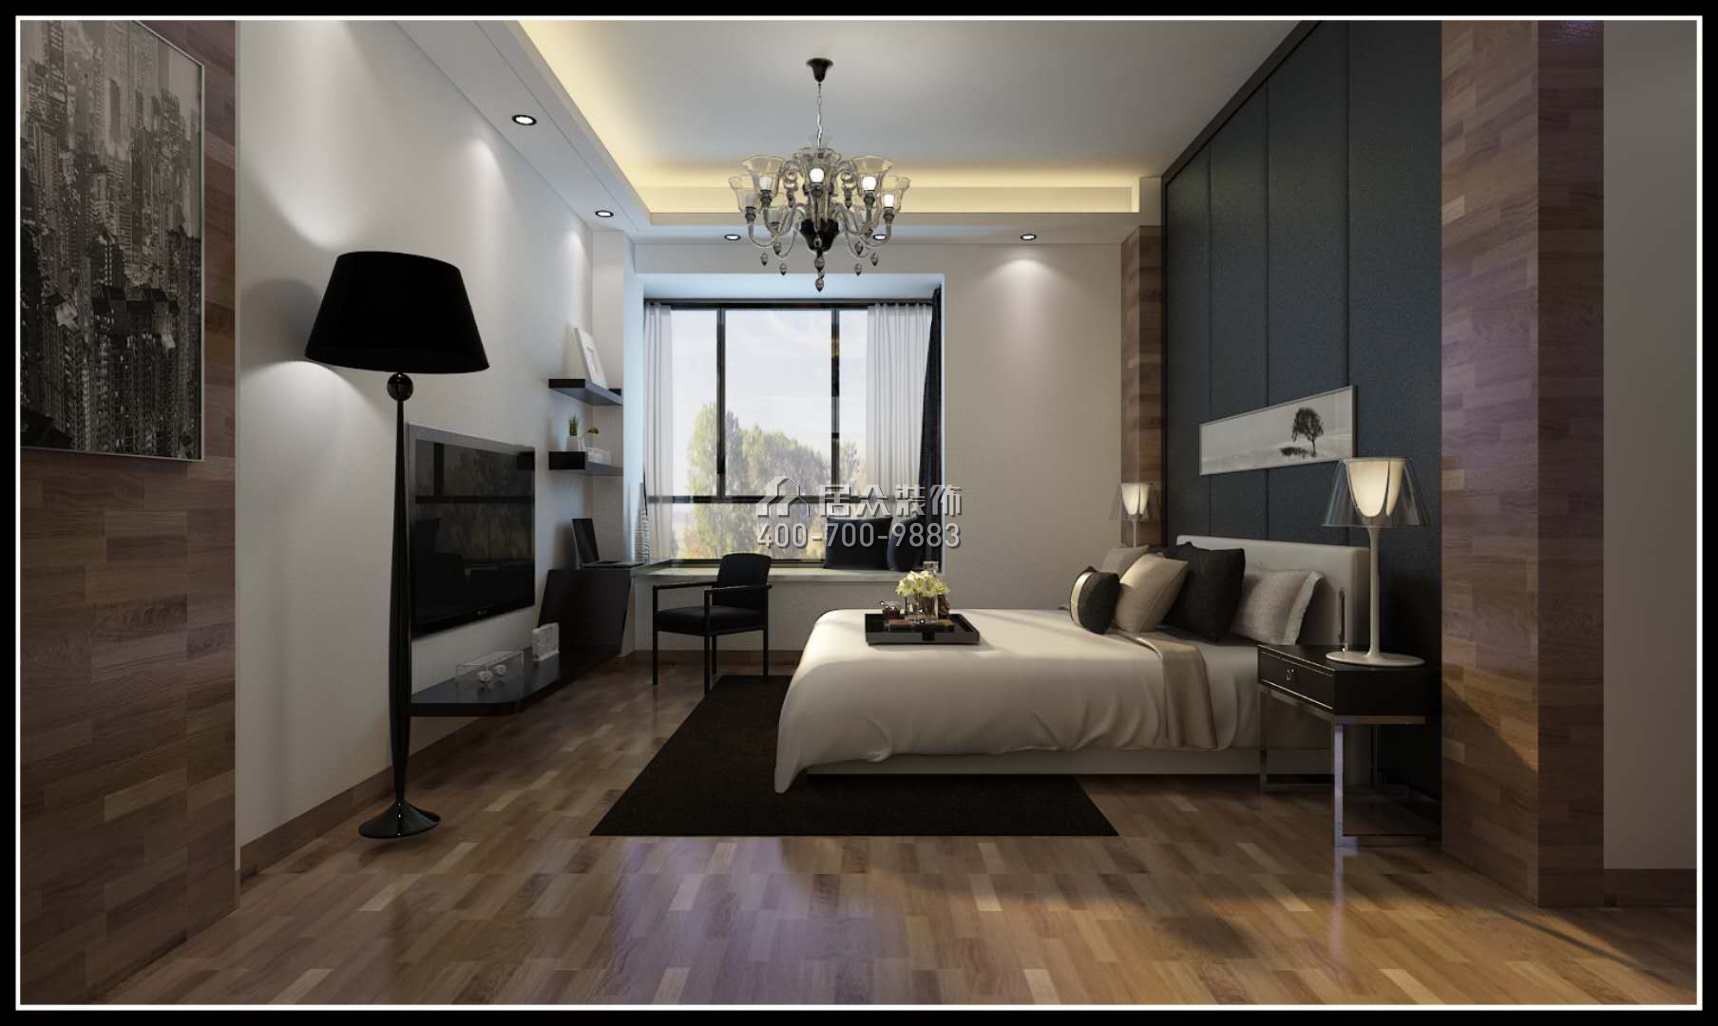 嶺南雋庭180平方米現代簡約風格平層戶型臥室裝修效果圖